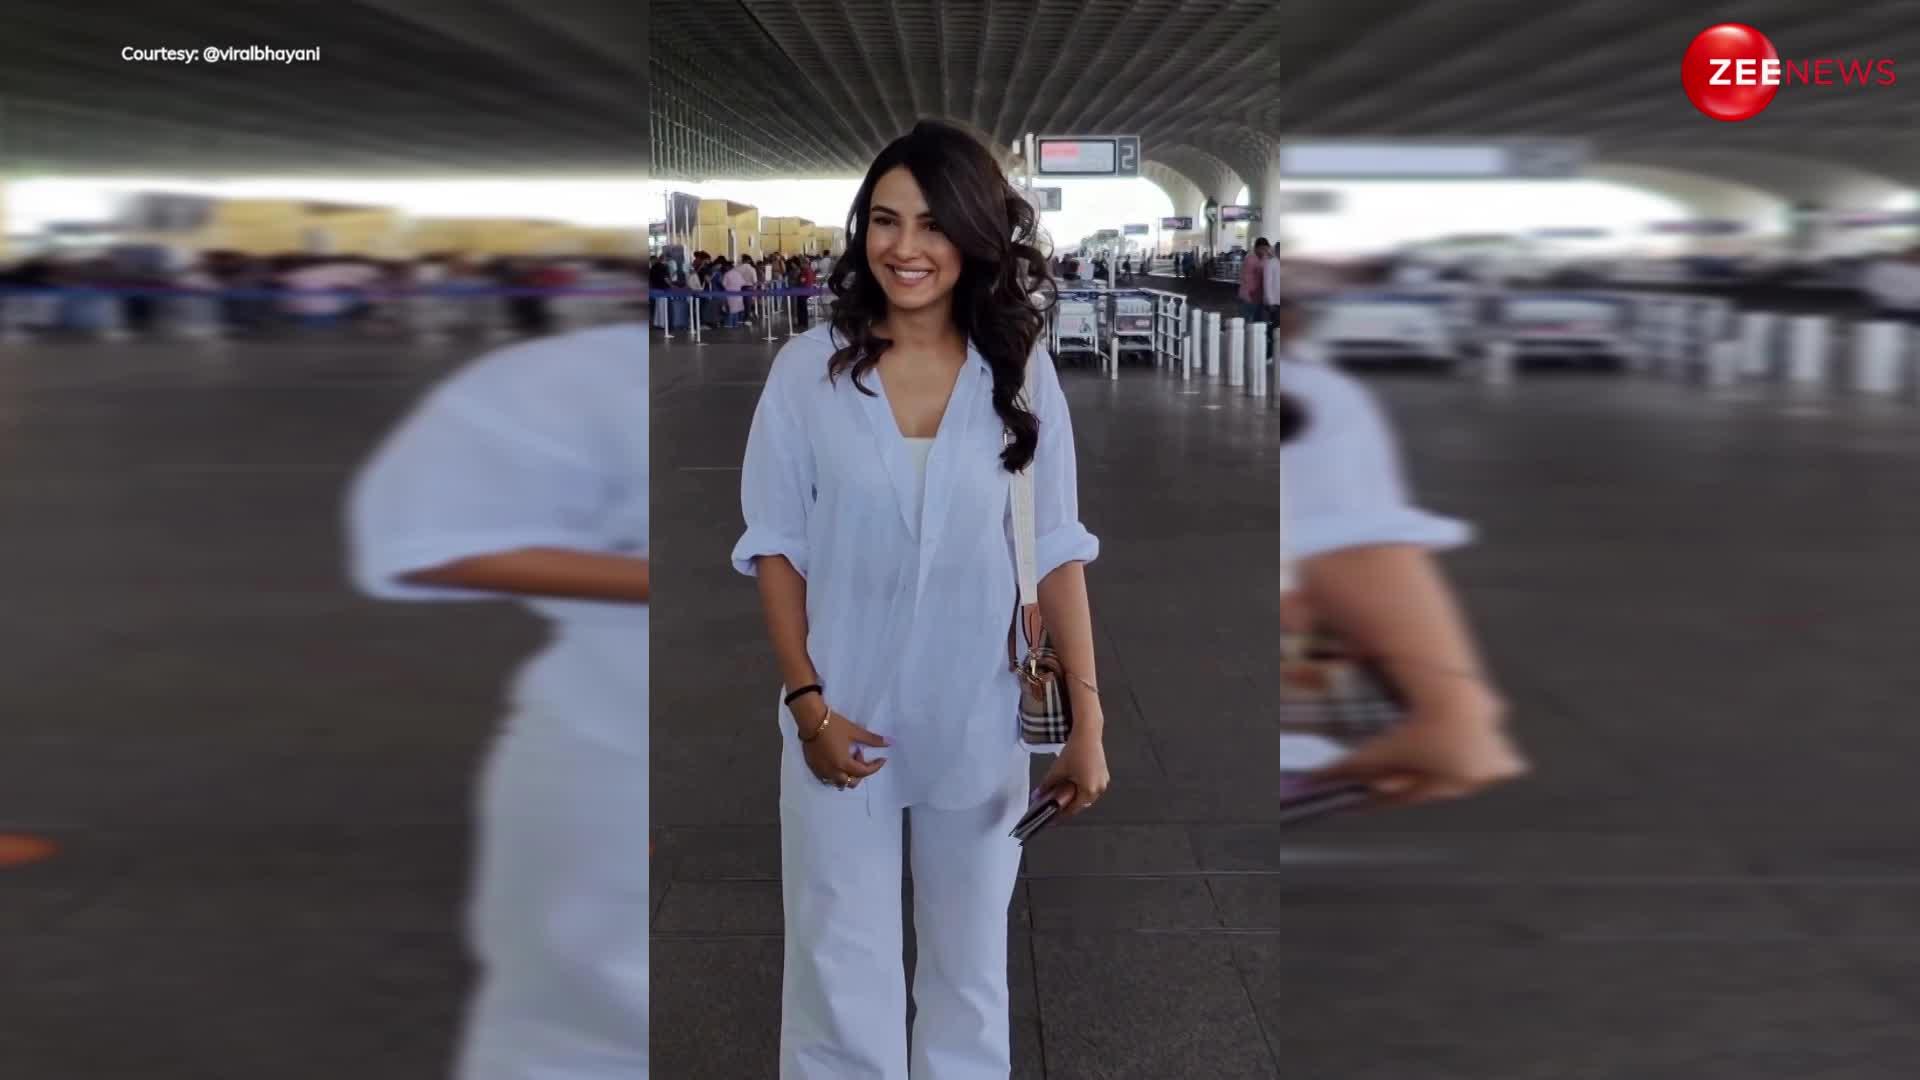 एक्ट्रेस Jasmin Bhasin ने एयरपोर्ट पर कैमरे के सामने दी इतनी बड़ी स्माइल, लोग बोले- इसे कोलगेट के ऐड में भेज दो